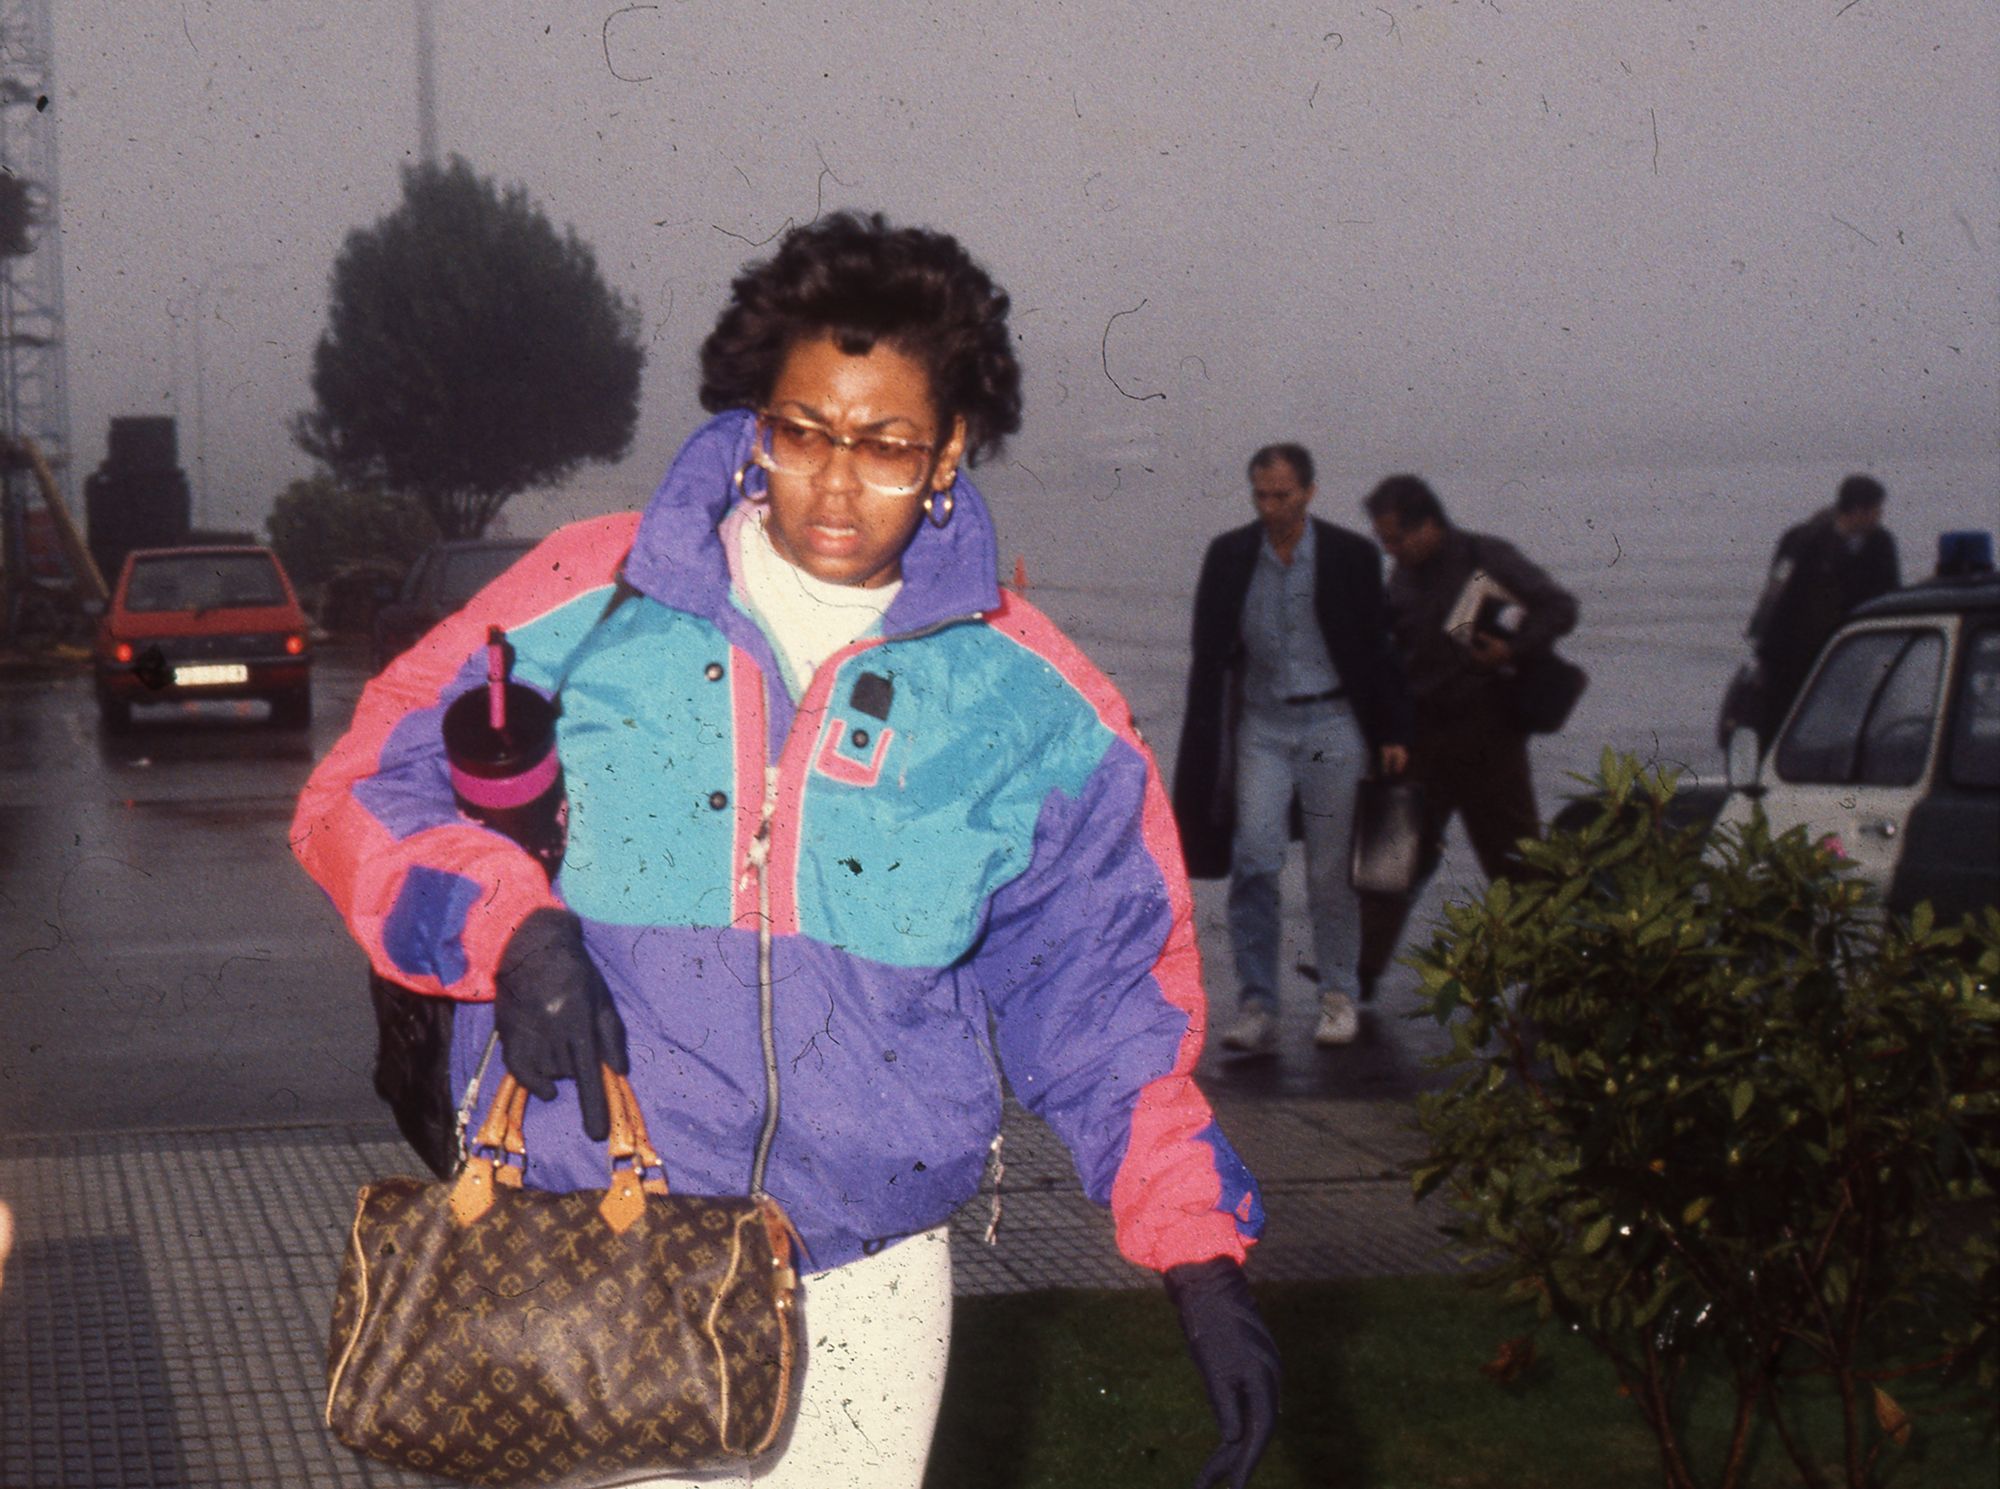 La jugadora de baloncesto Cheryl Taylor a su llegada tras su fichaje por el Xerox Vigo en 1991 Cameselle.jpg